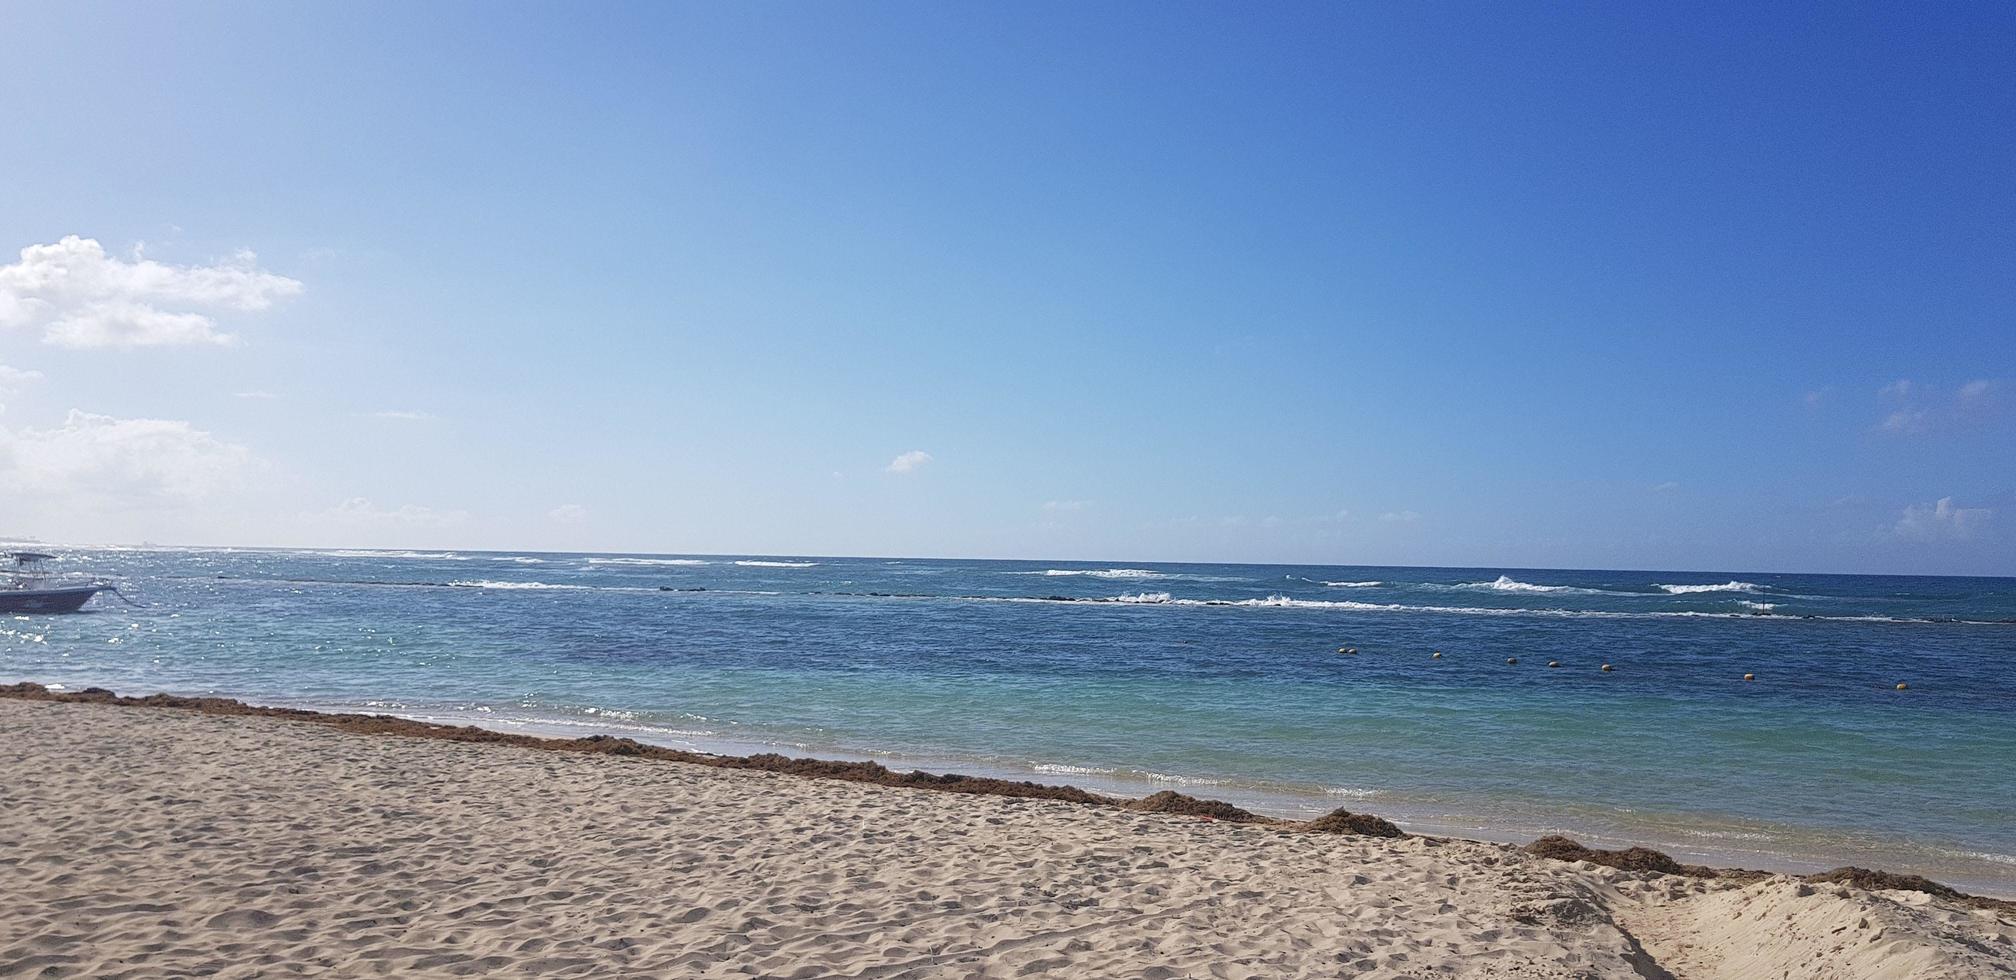 paradis dominicana, karibiska havet, natur, palmer, strand, sol och sand foto